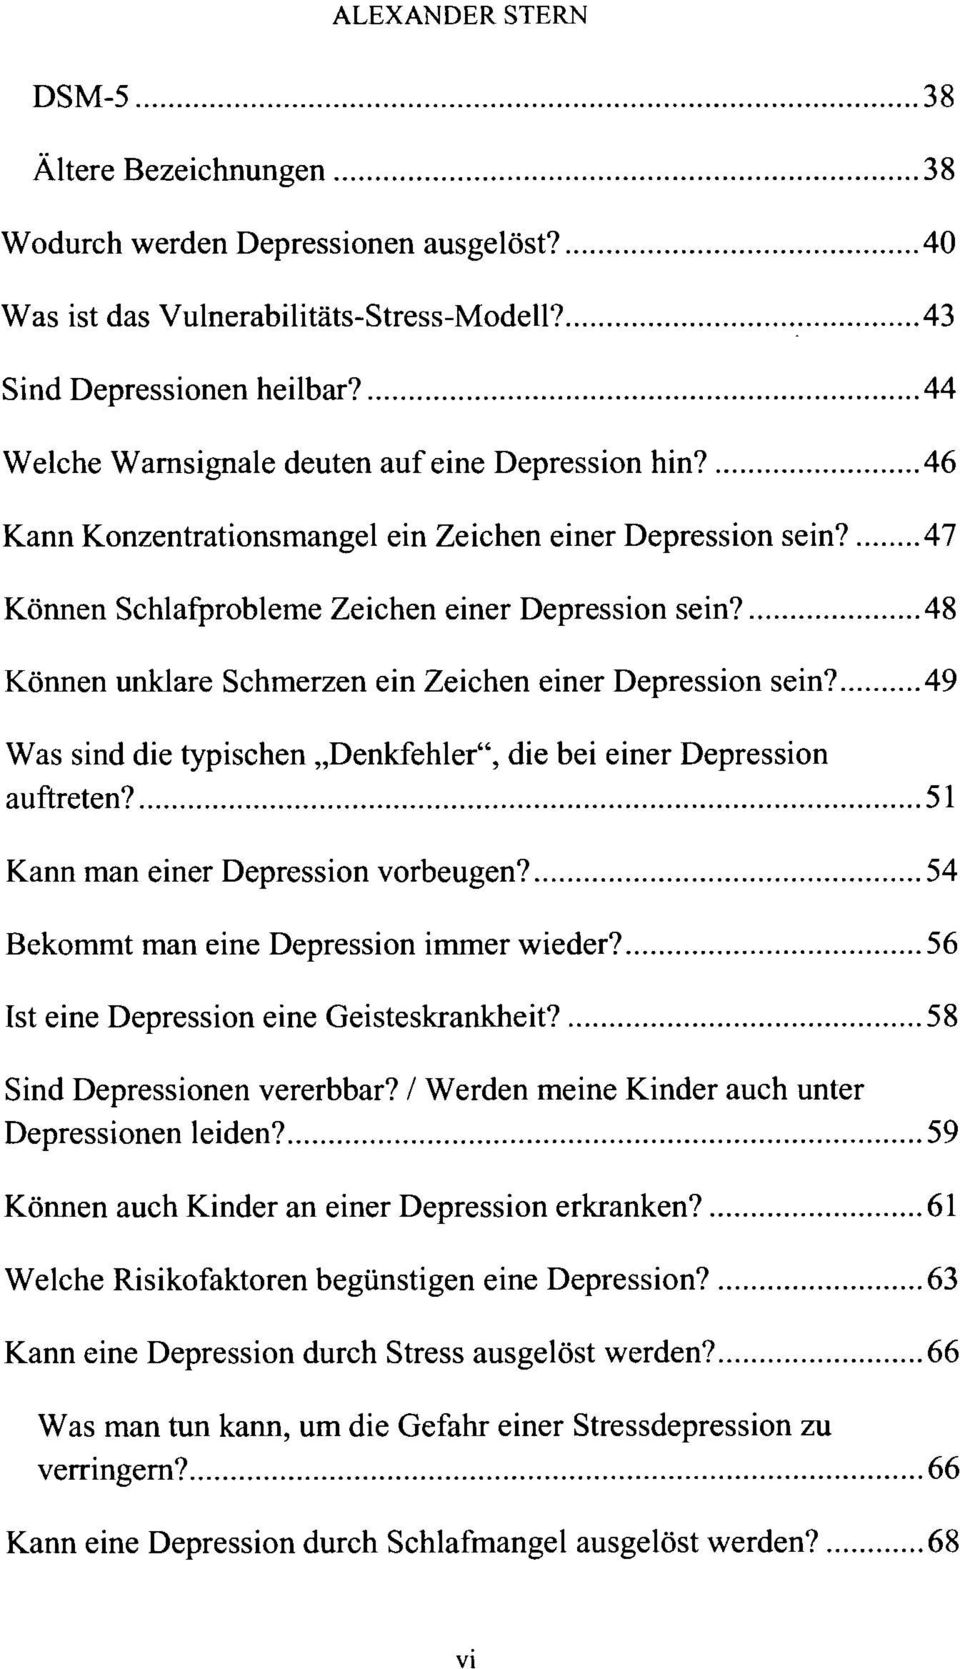 48 Können unklare Schmerzen ein Zeichen einer Depression sein? 49 Was sind die typischen Denkfehler", die bei einer Depression auftreten? 51 Kann man einer Depression vorbeugen?